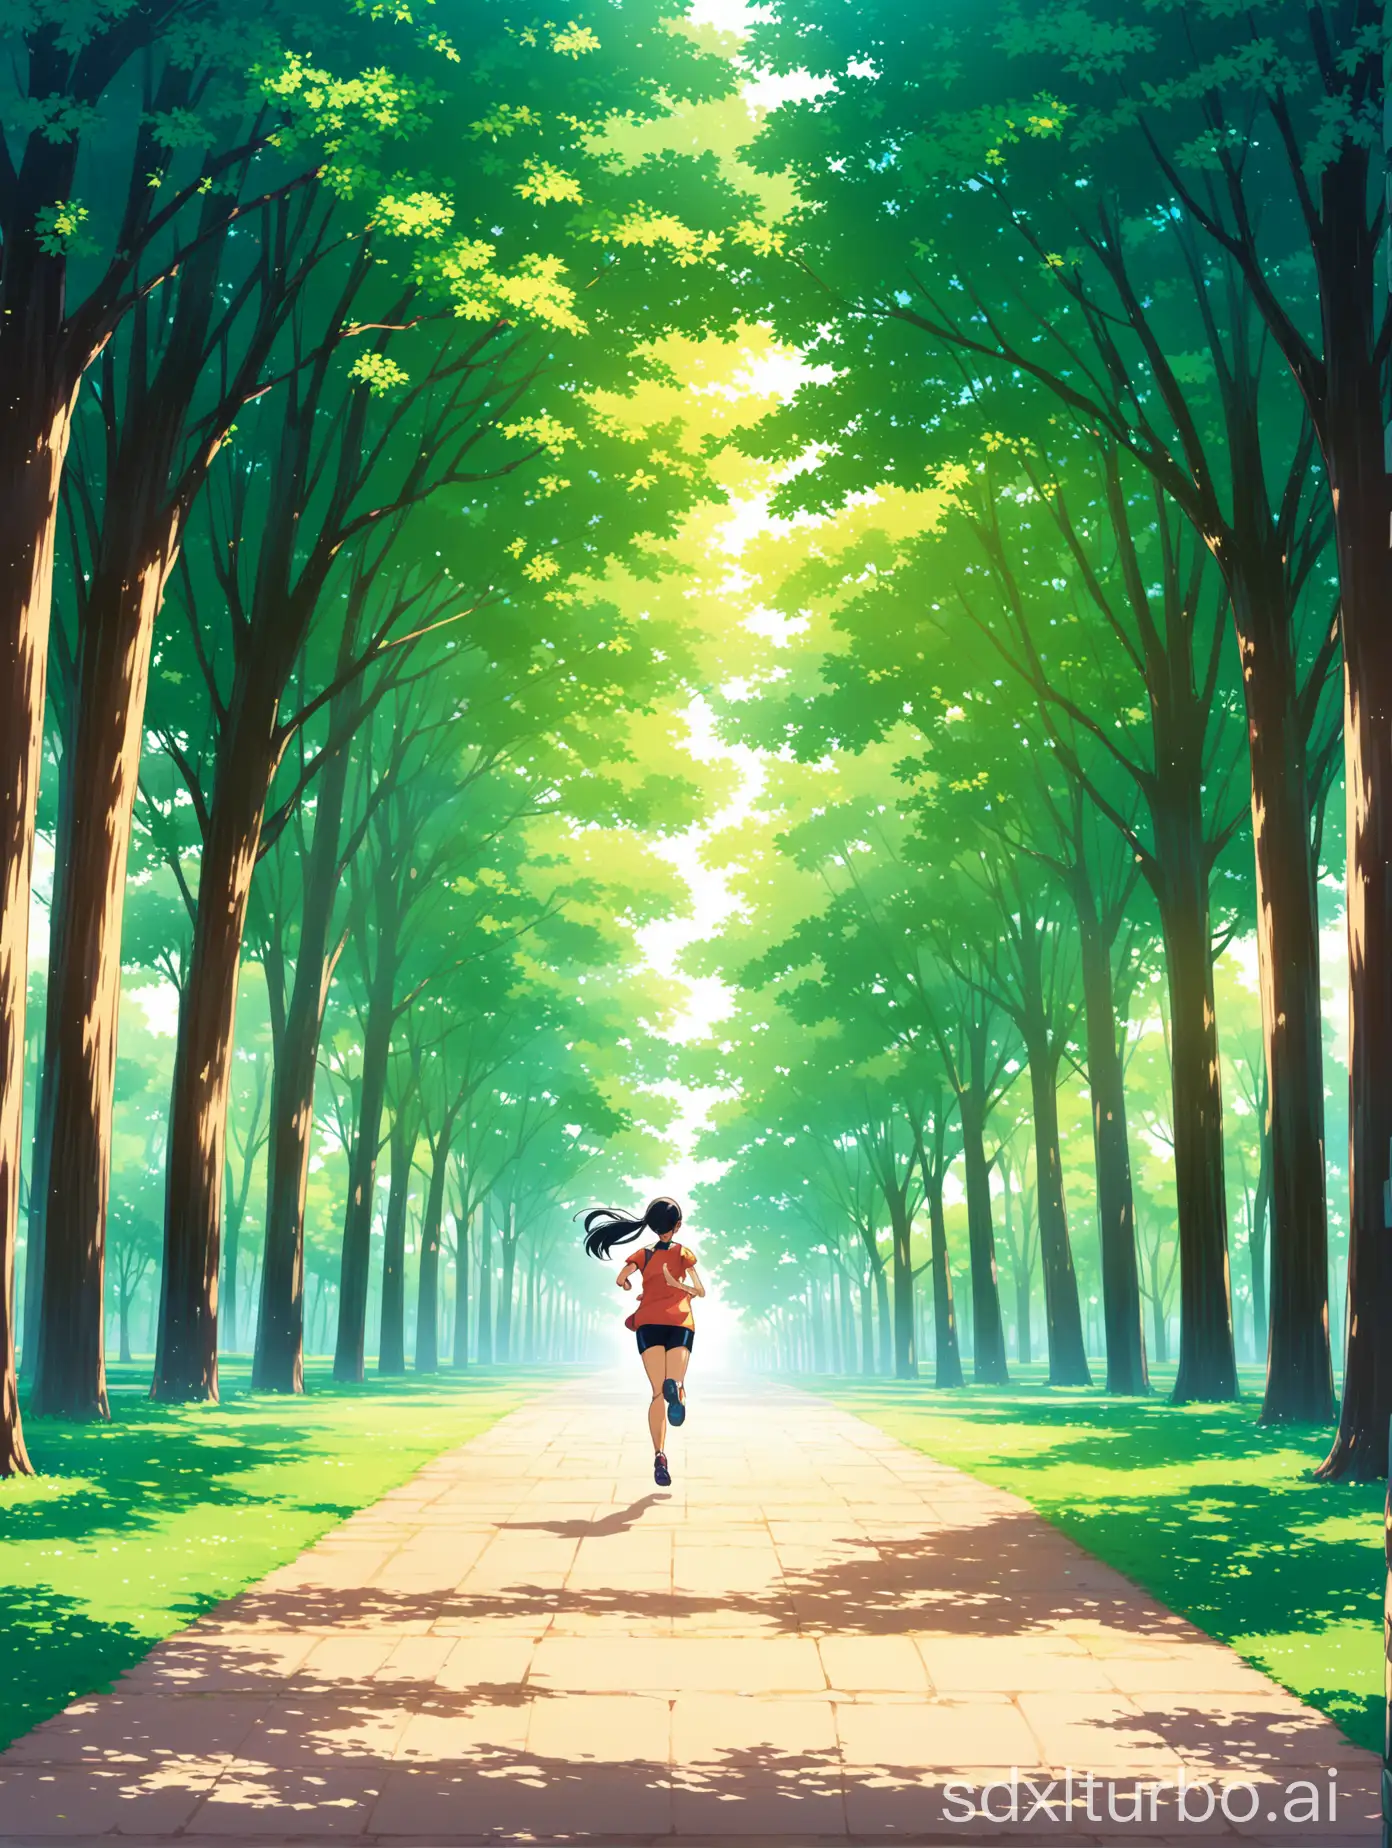 Anime-Marathon-Runners-in-Park-Setting